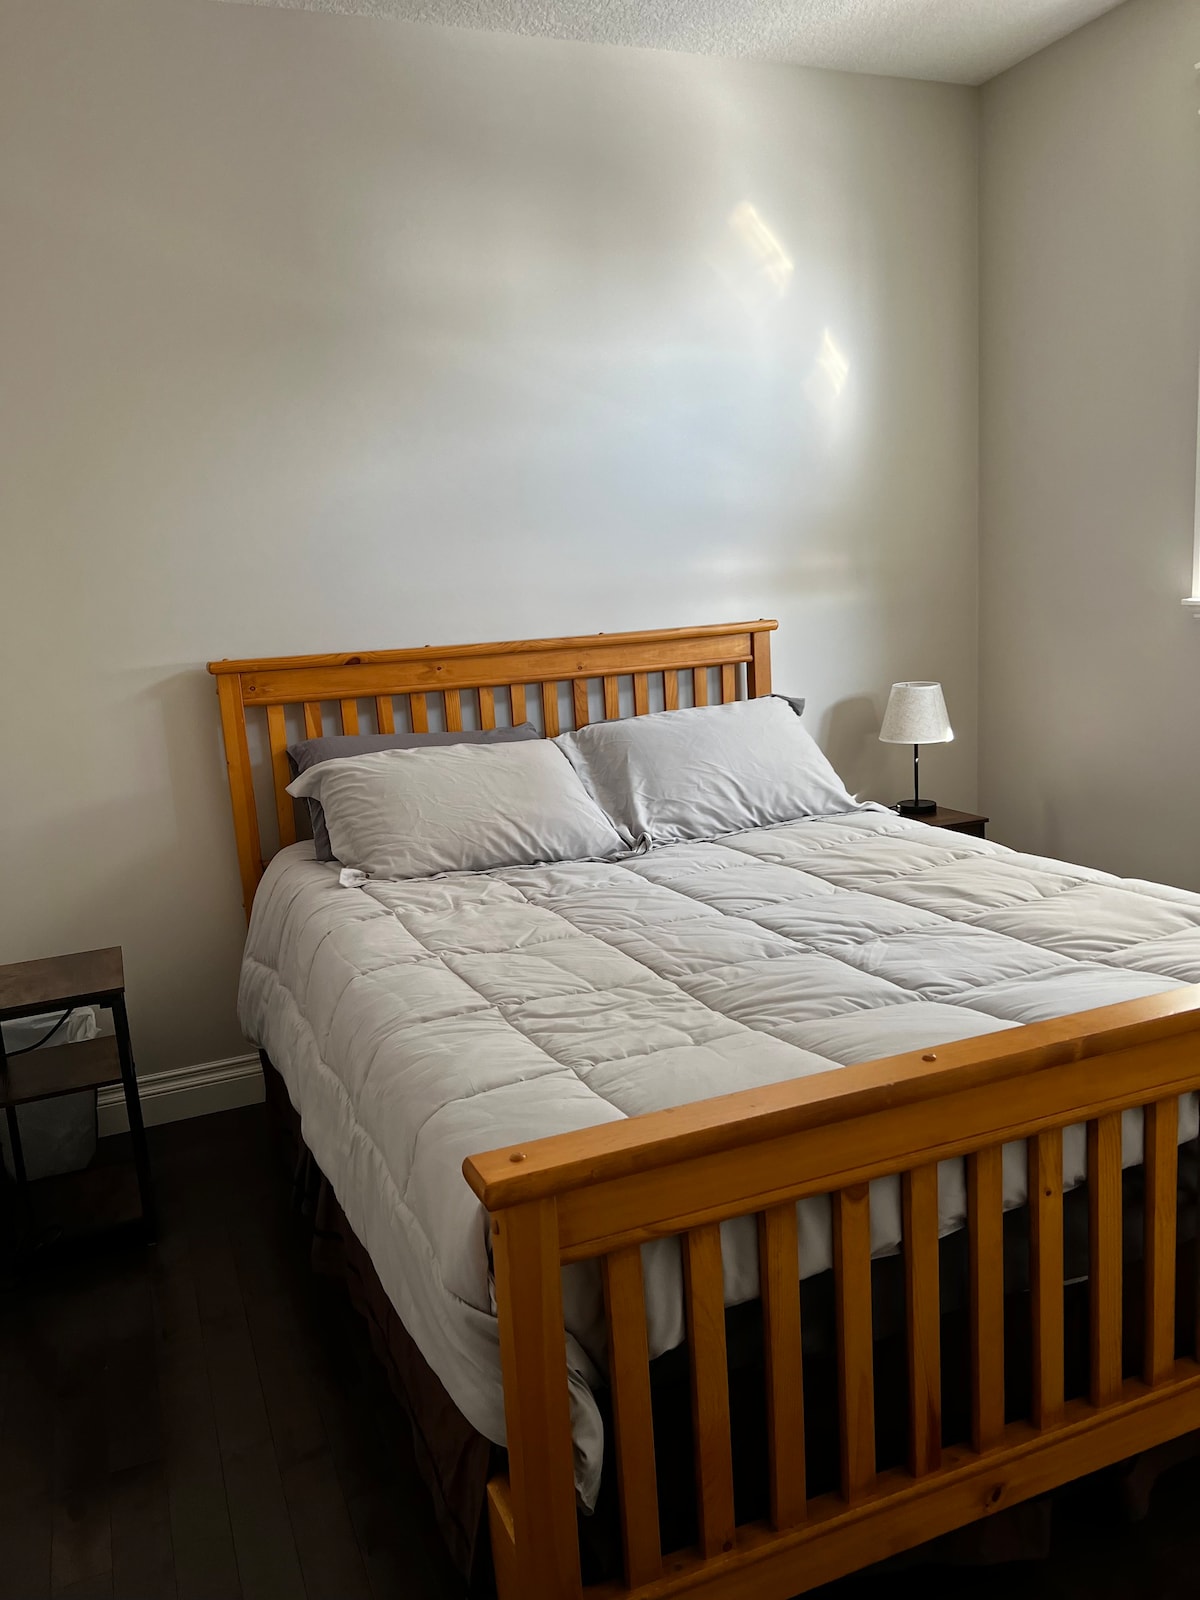 Two bedroom in Fort Saskatchewan